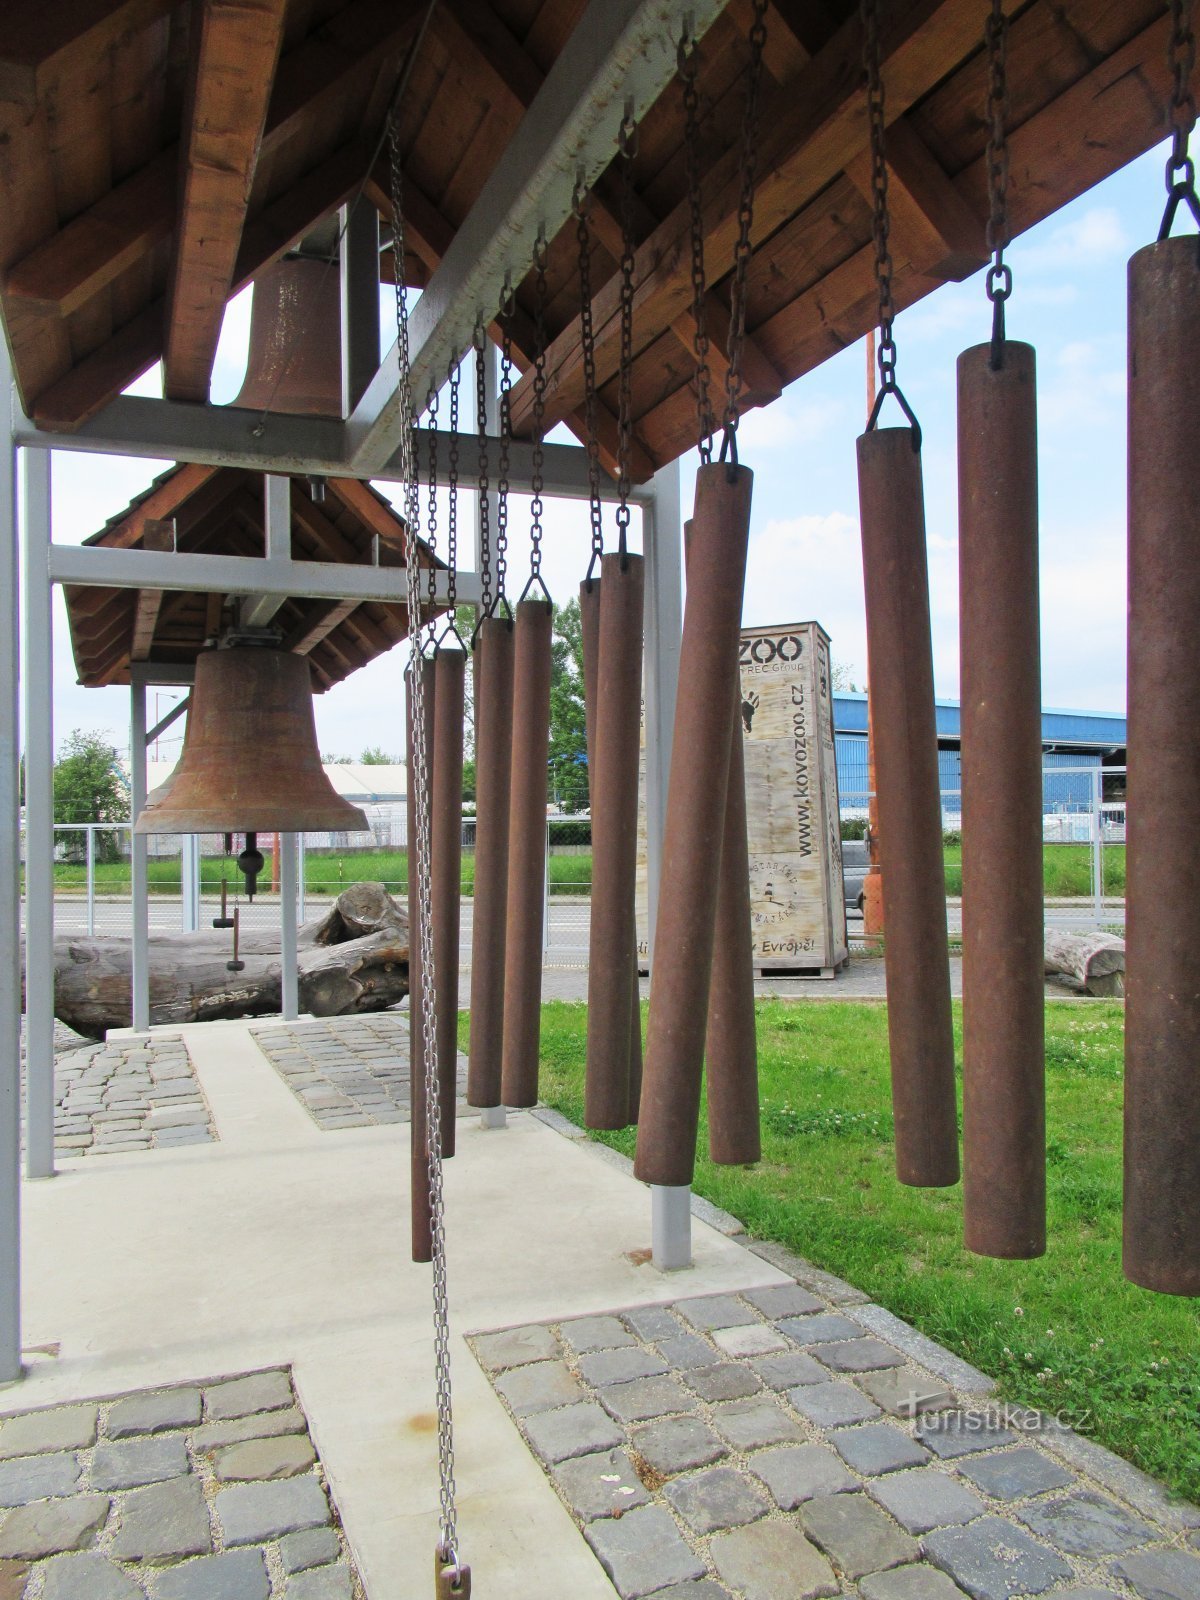 Tháp chuông với carillon trong khu phức hợp Kovozoo ở St. Thành phố